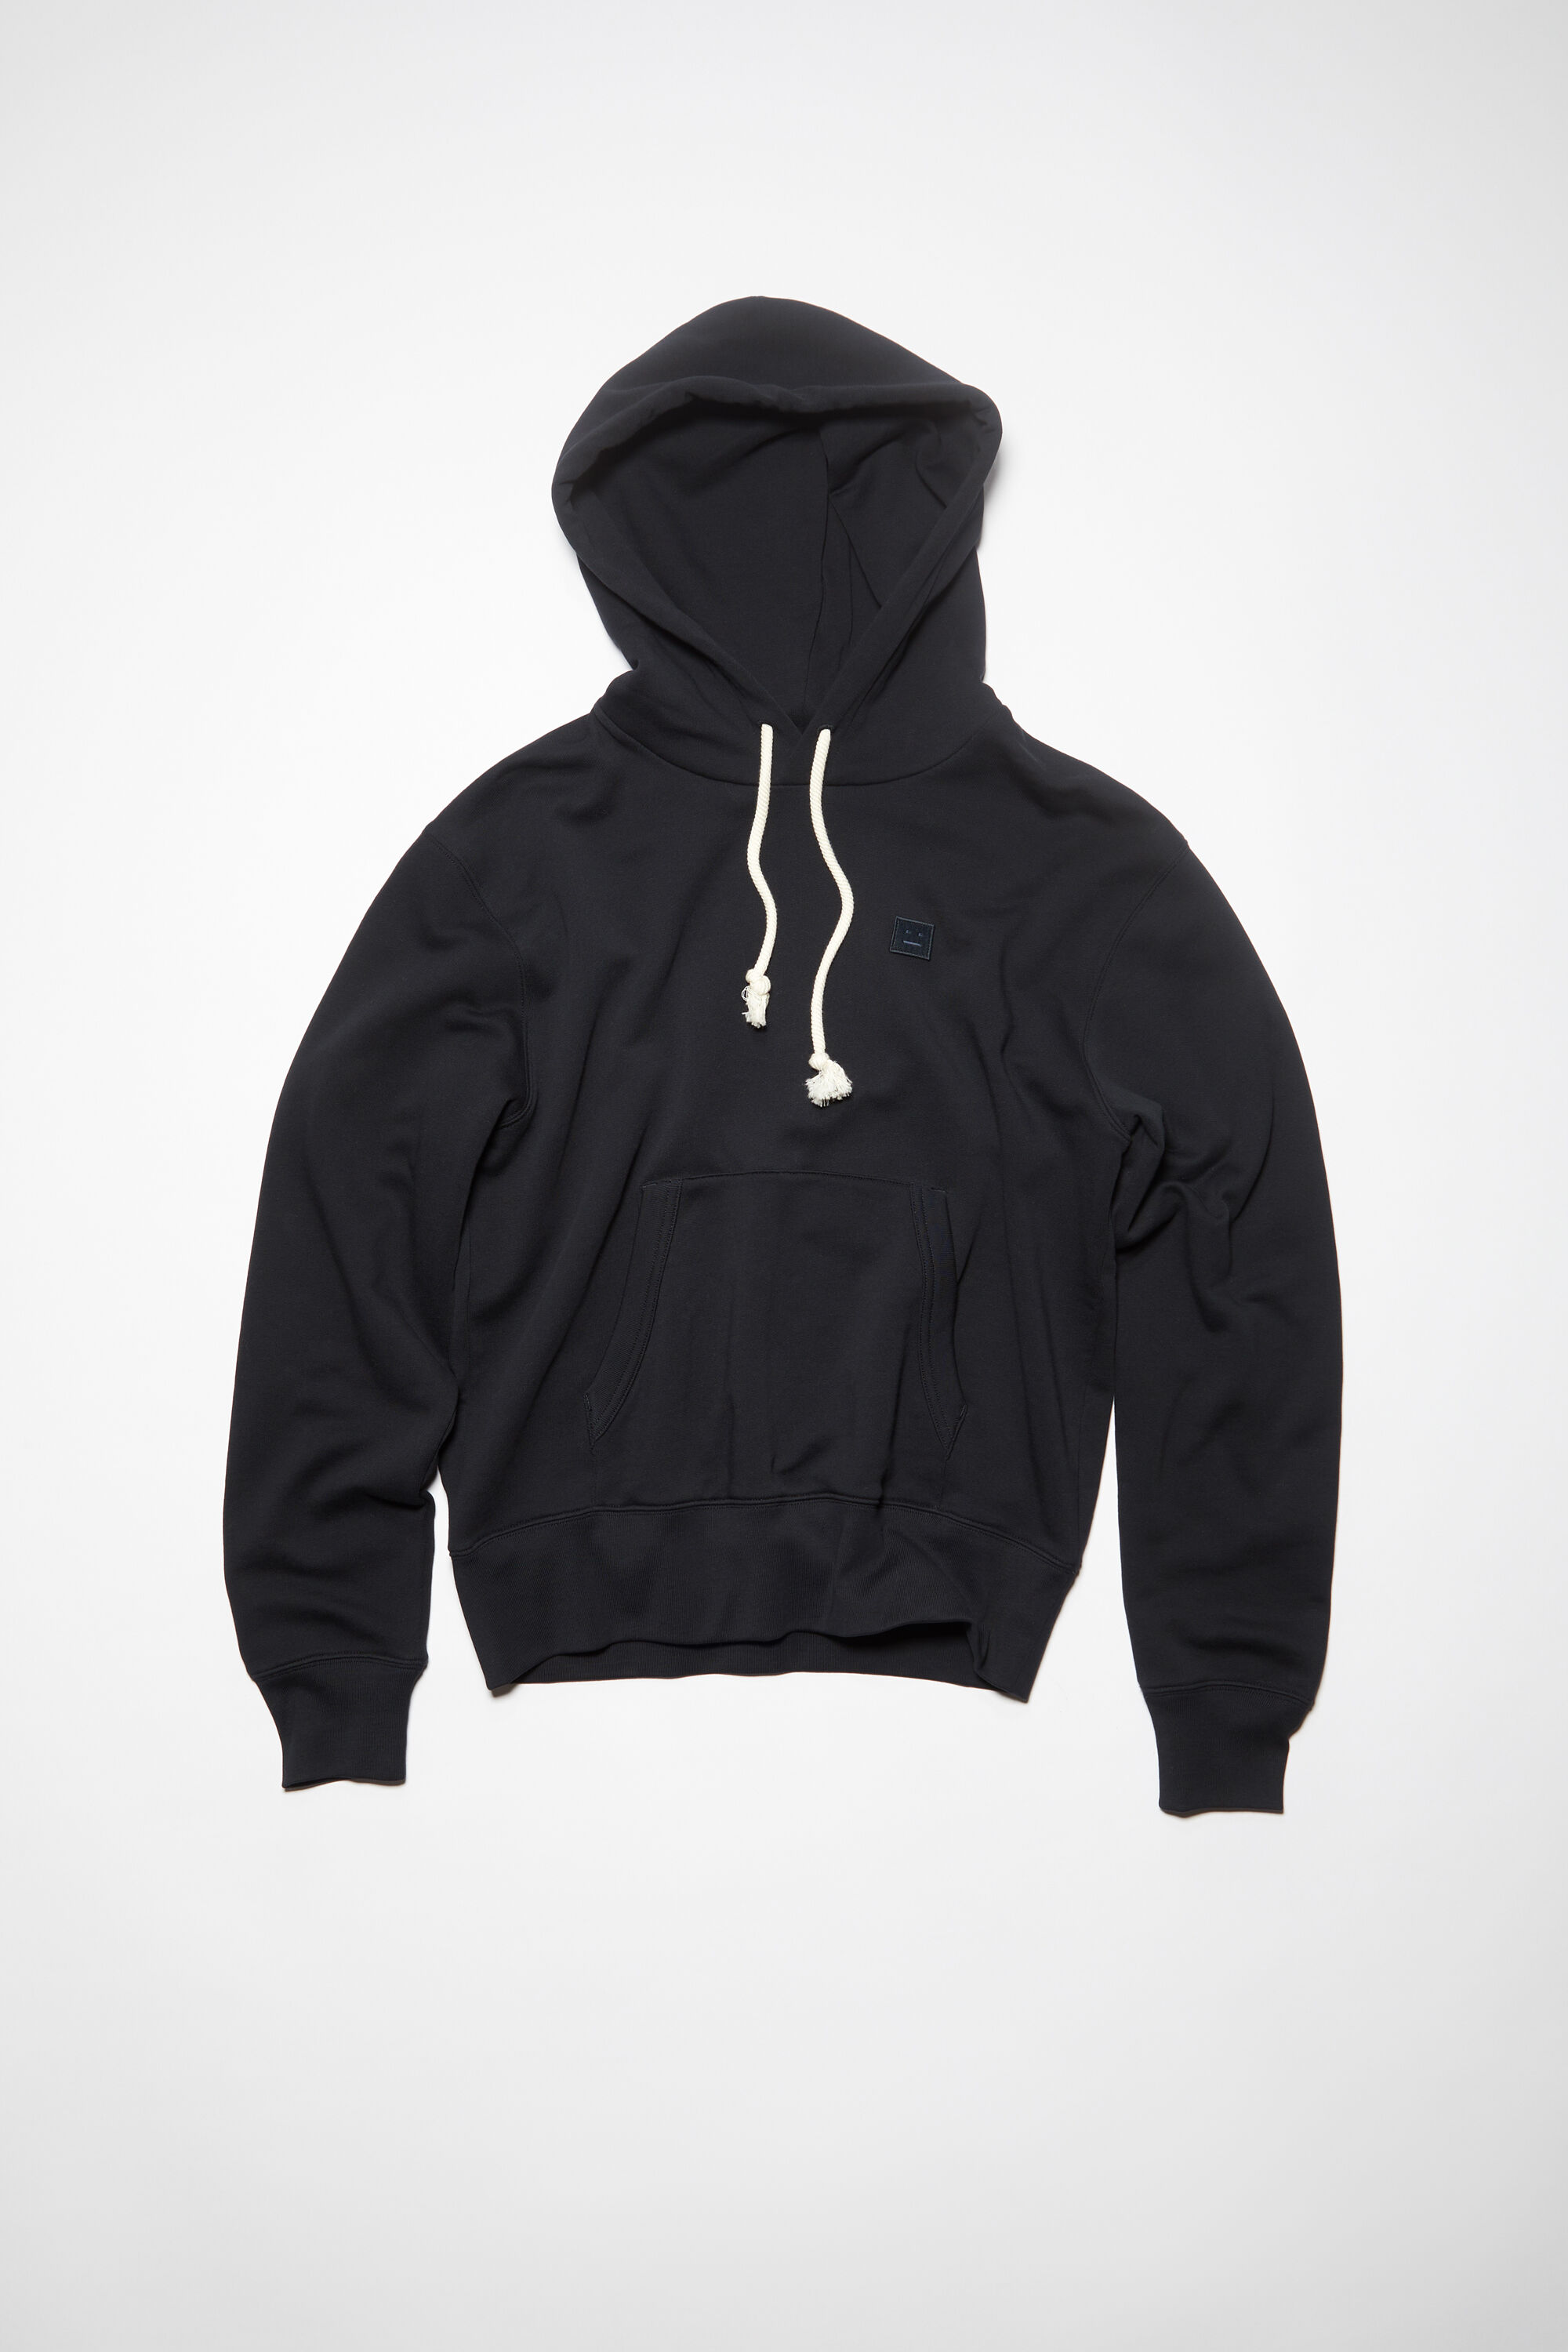 Acne Studios - Hooded sweatshirt - Regular fit - Black